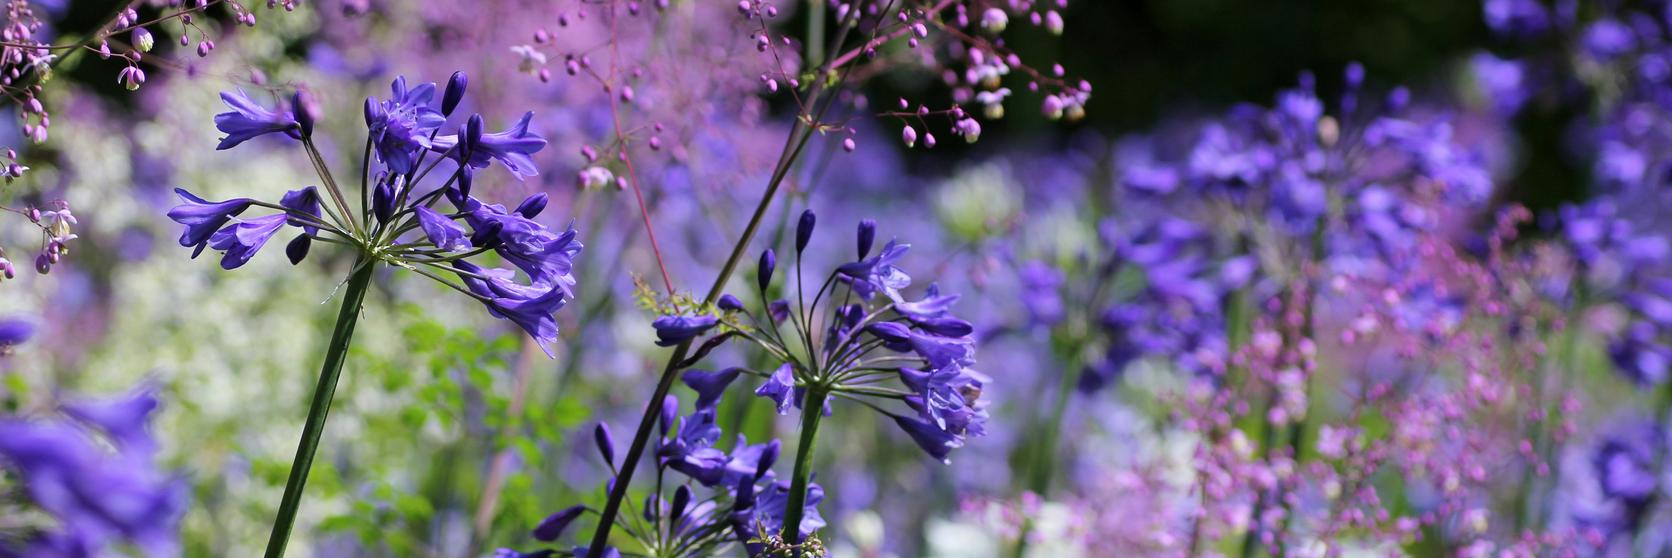 agapanthus-flowers-in-purple